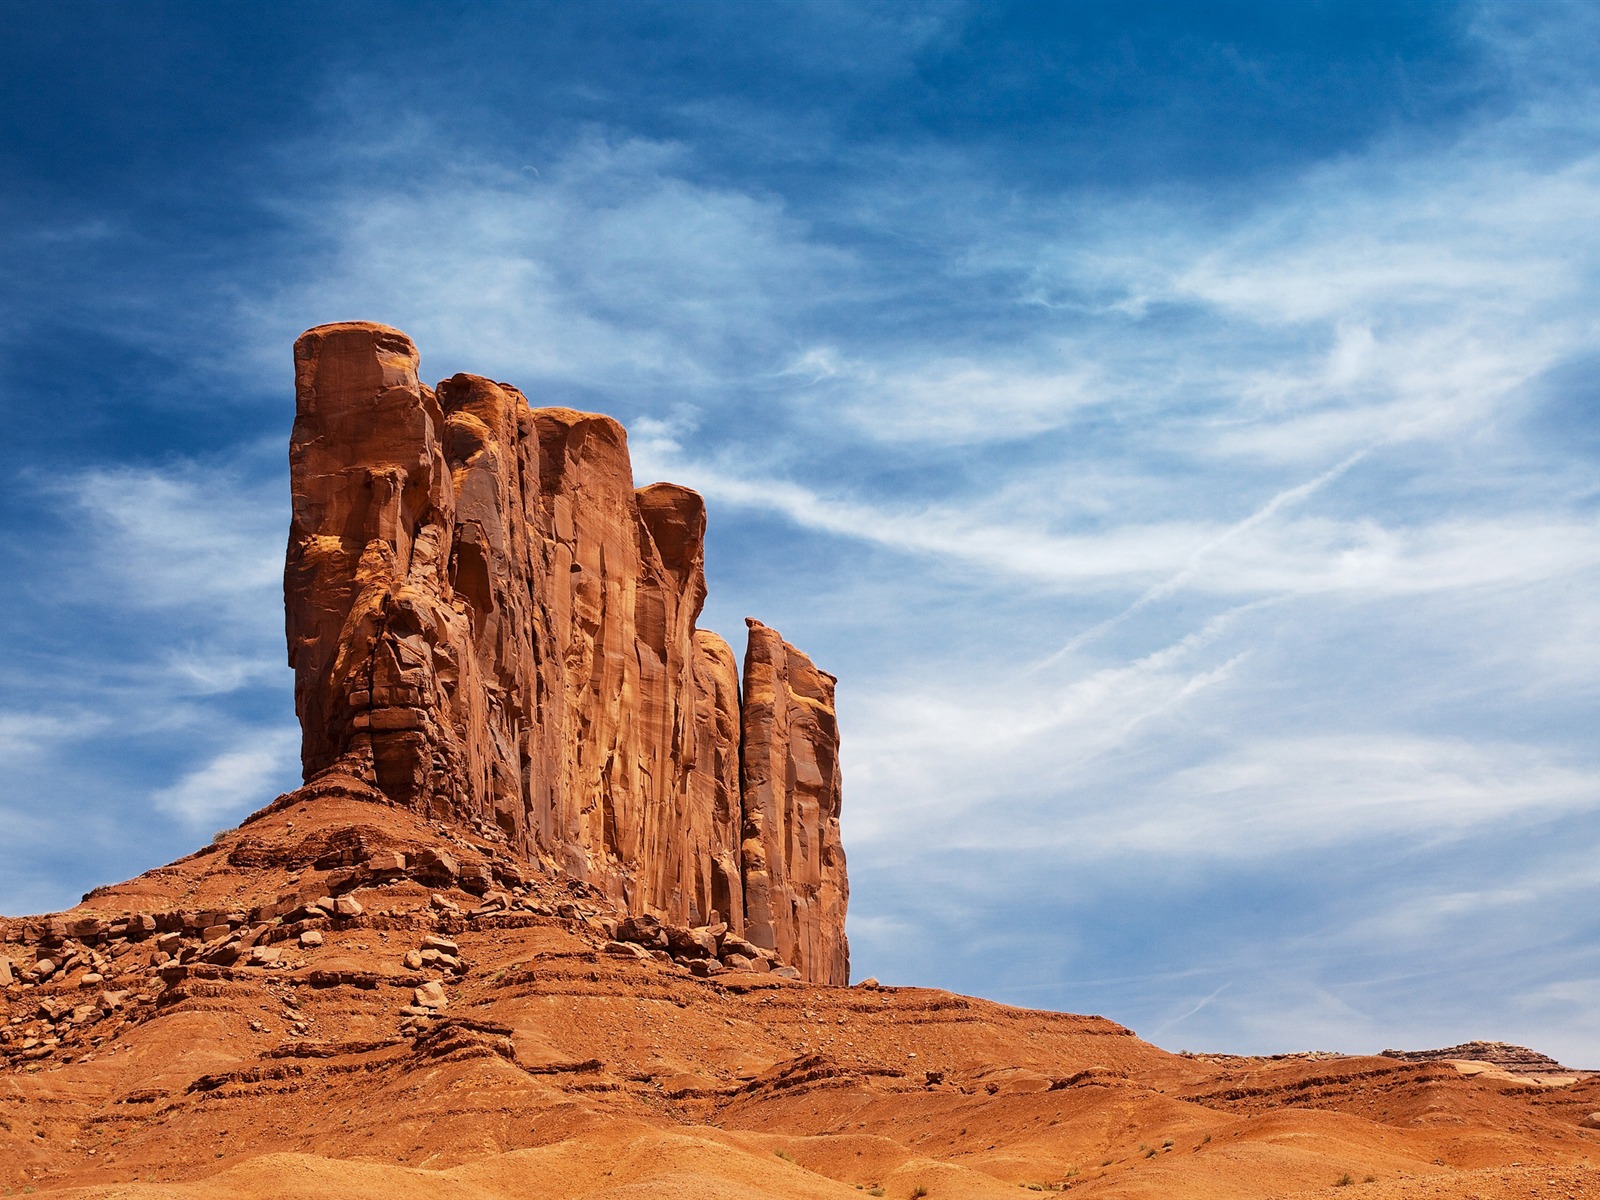 desert rock-Amazing desert scenery Desktop Wallpapers - 1600x1200 ...